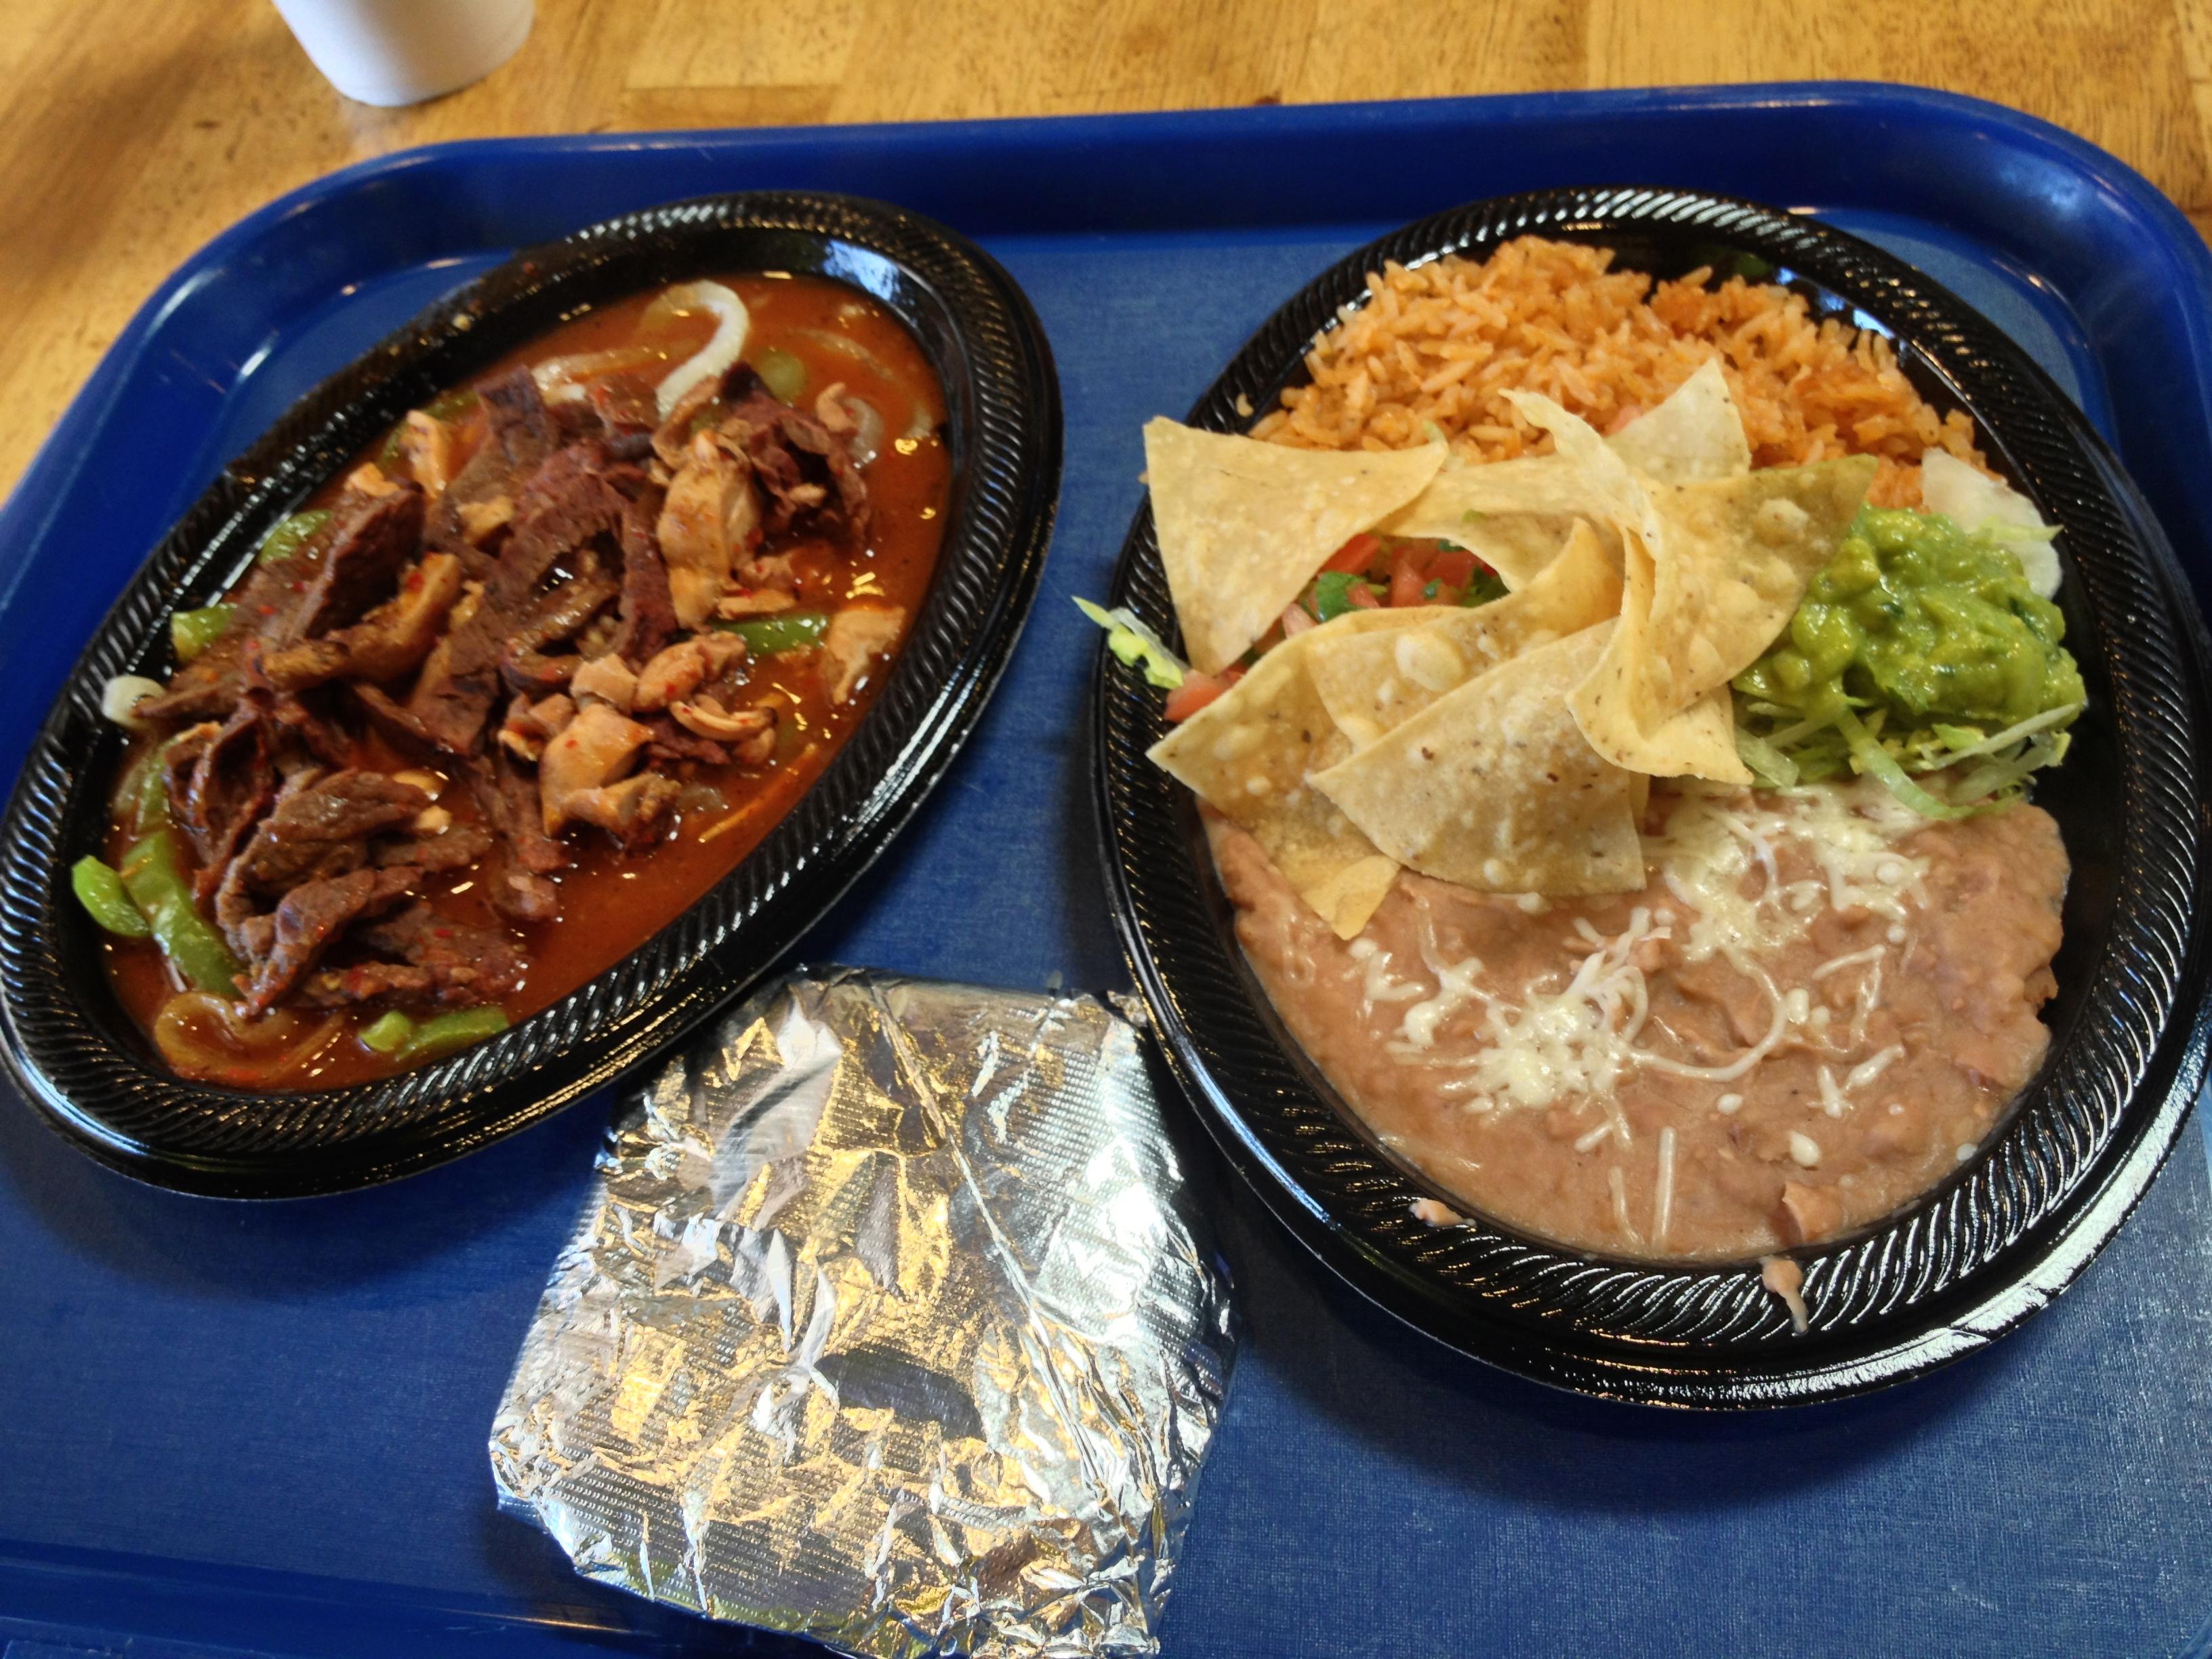 墨西哥菜为什么这么讨美国人喜欢?